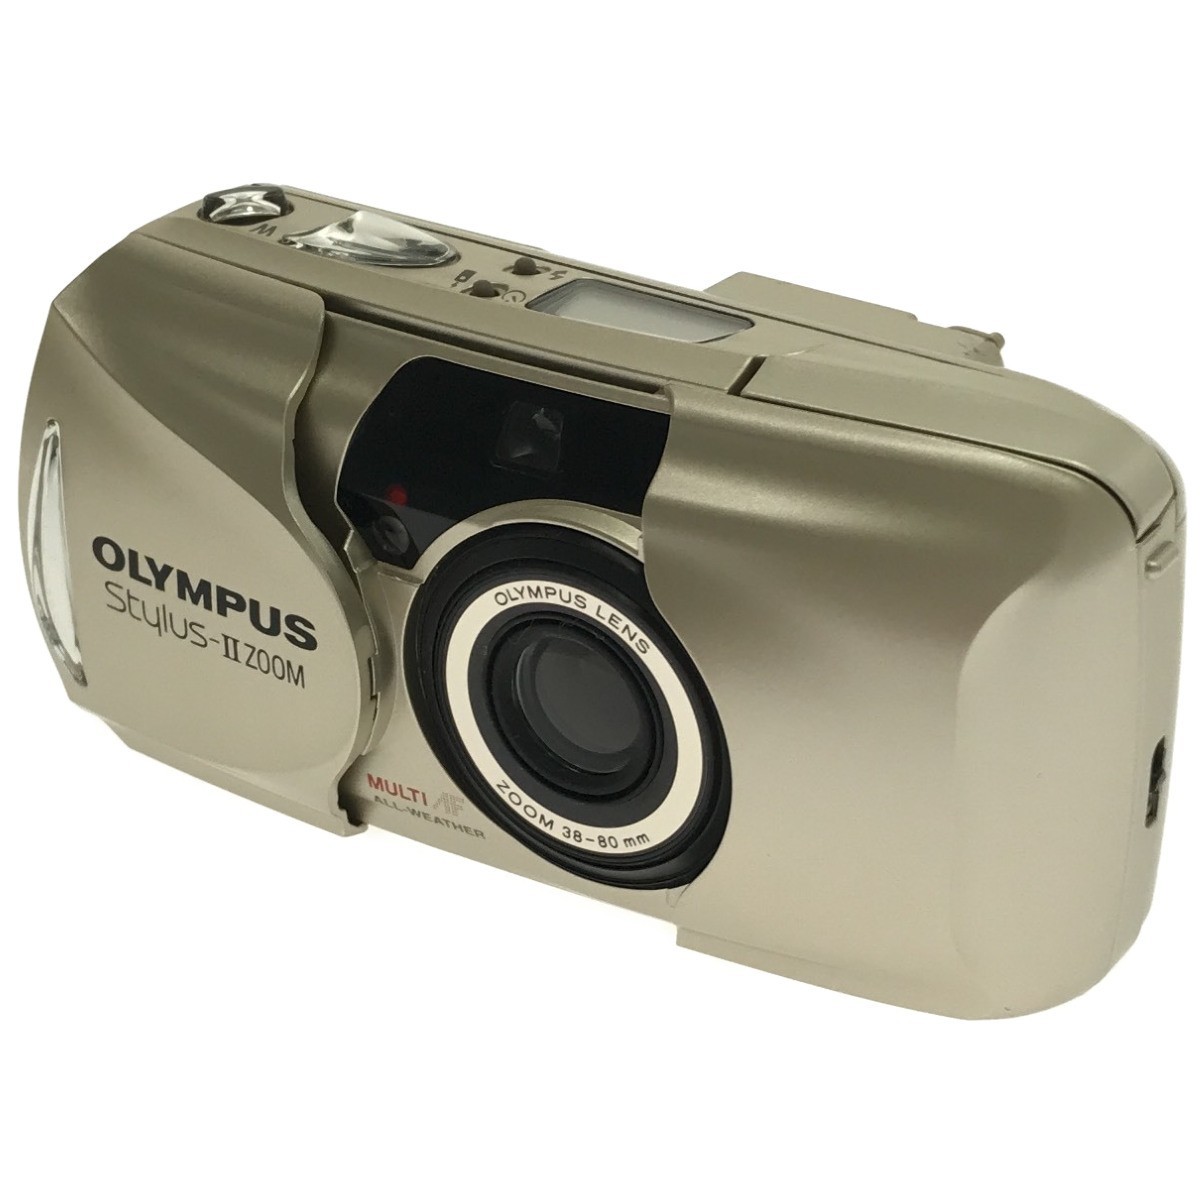 【訳あり 完動品】OLYMPUS Stylus II ZOOM 38-80mm オリンパス スタイラス ズーム コンパクトフィルムカメラ ゴールド 生活防水 人気 C2509